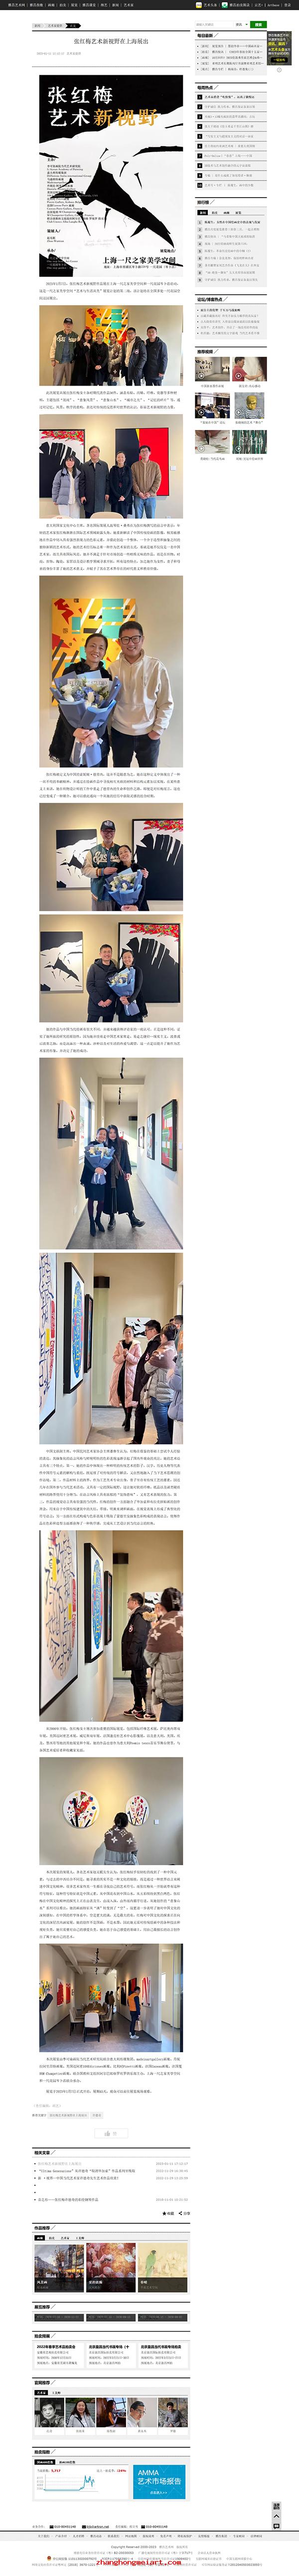 张红梅艺术新视野在上海展出